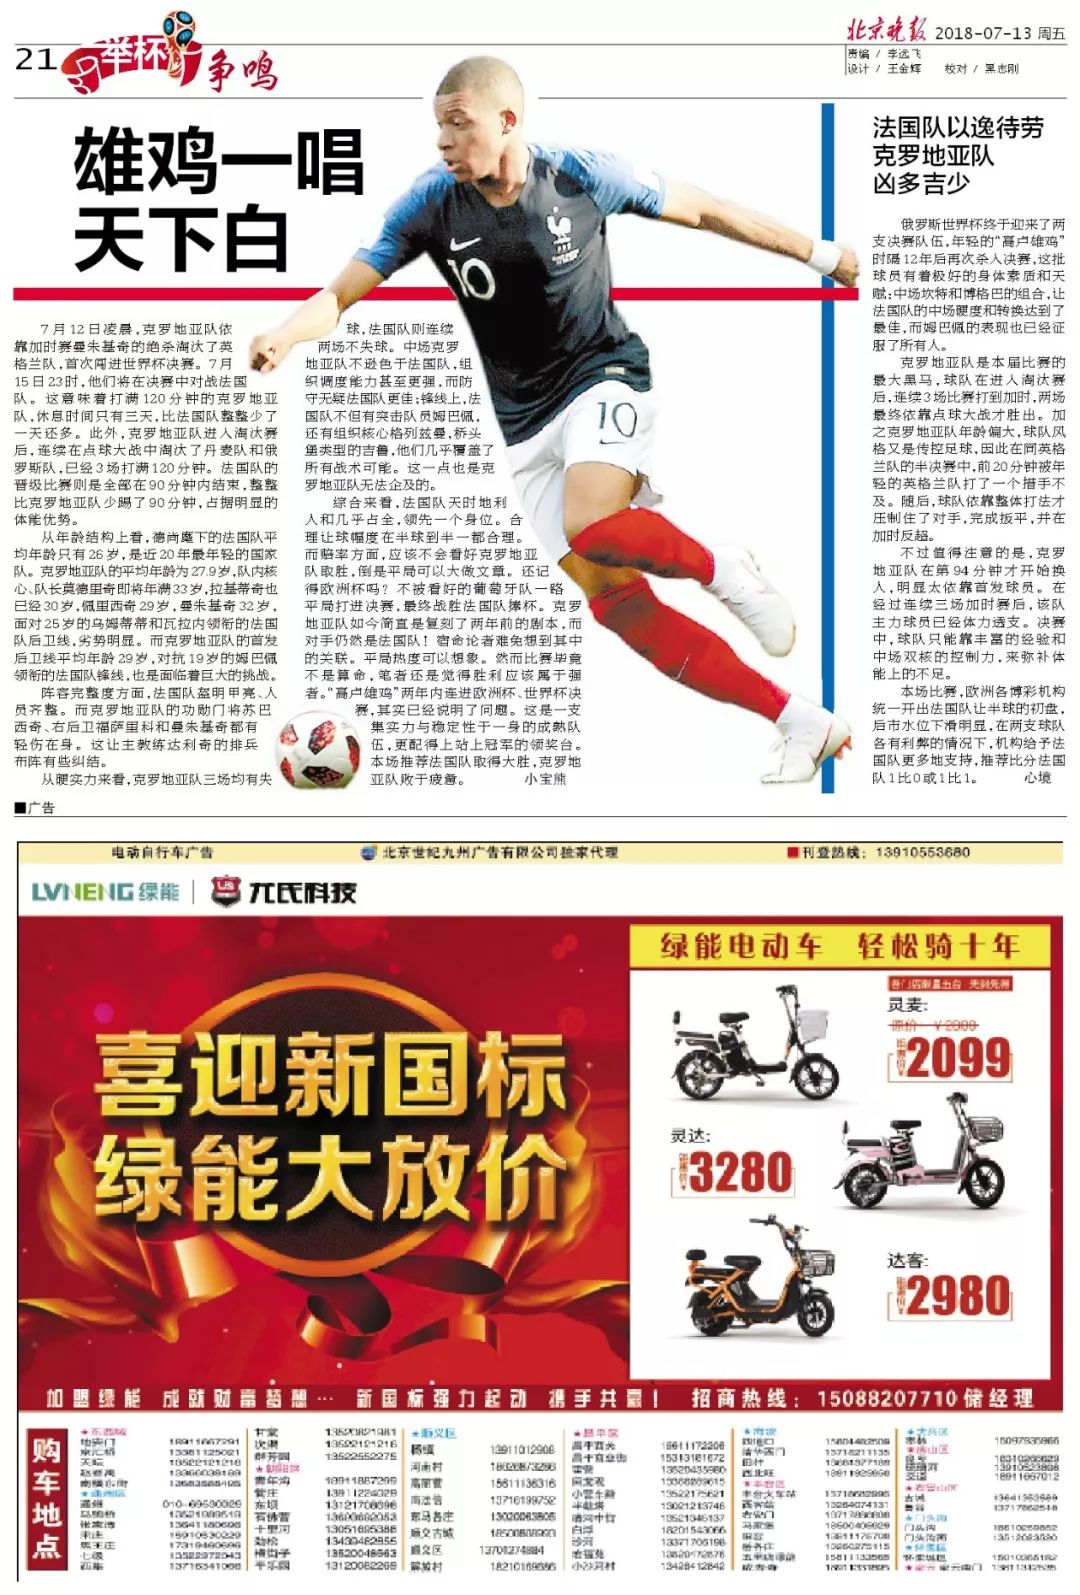 冲击北京晚报7月13日世界杯版面欣赏